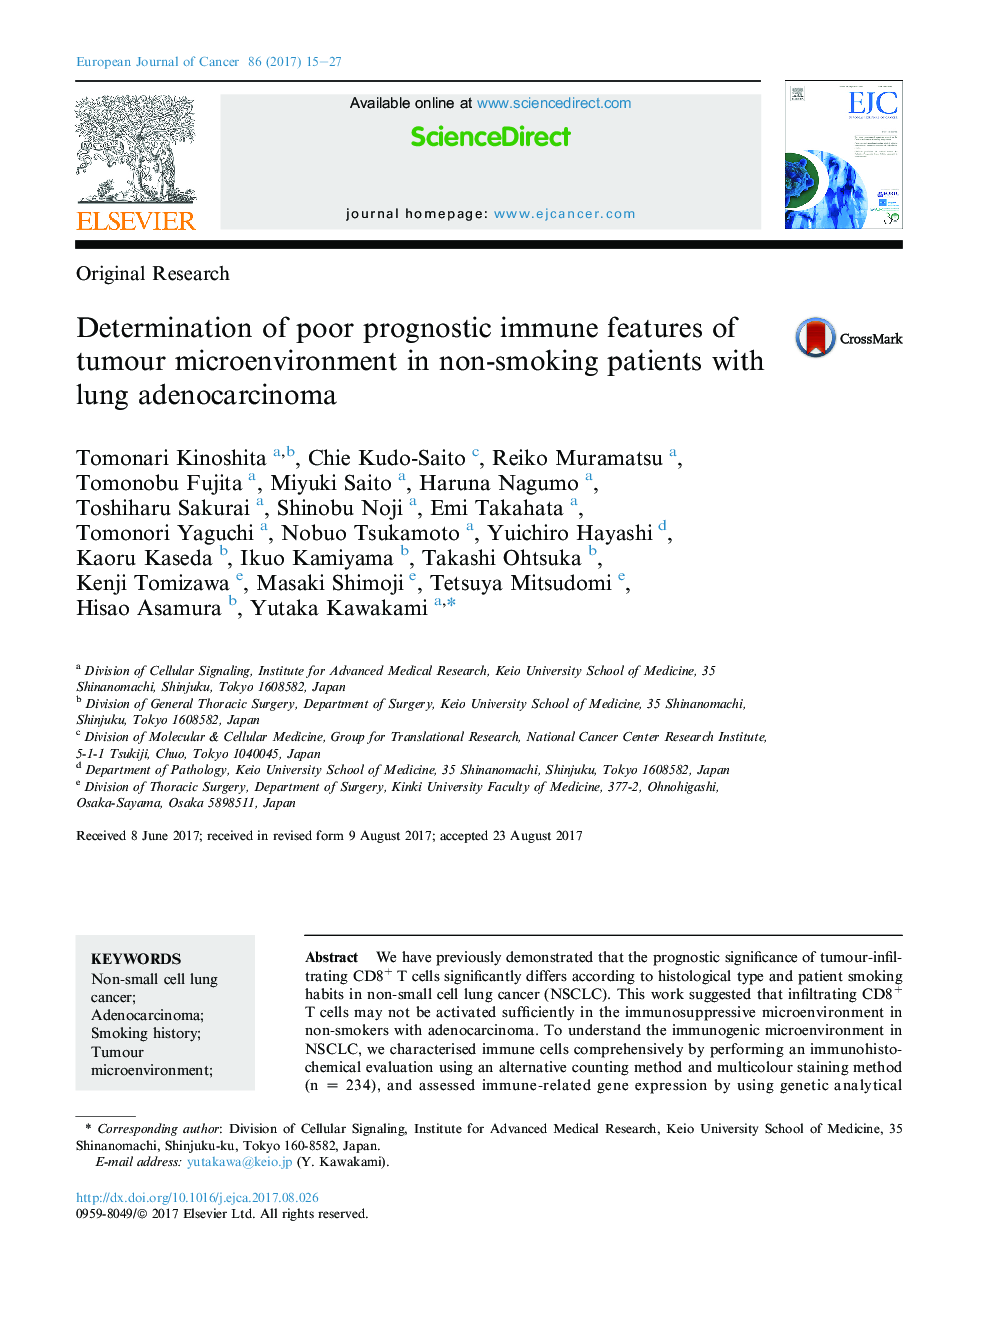 تحقیقات اصلی تعیین ویژگی های ایمنی پیش آگهی ضعیف محیط میکروسکوپی تومور در بیماران غیر سیگاری با آدنوکارسینوم ریه 